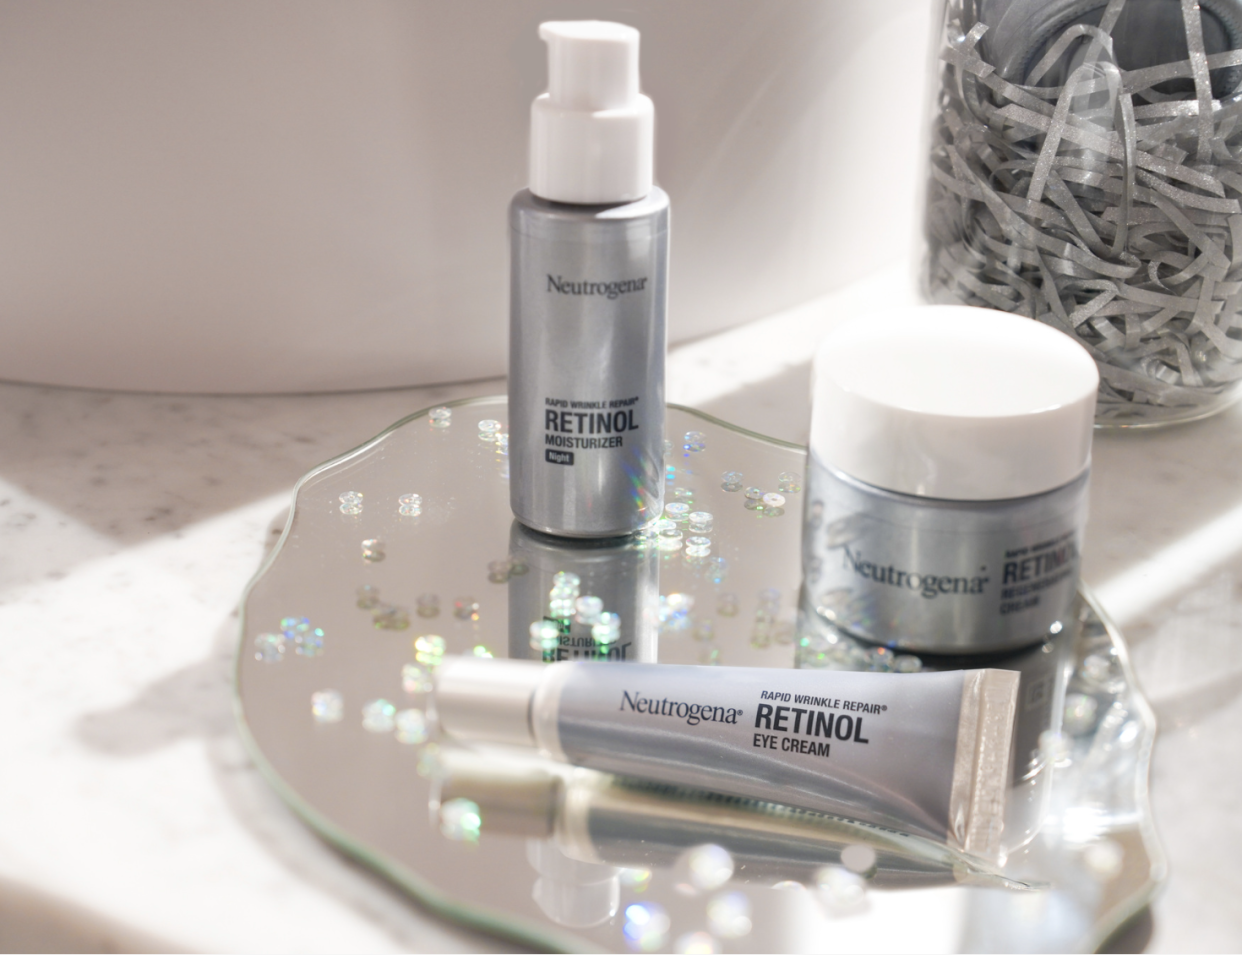 The new Neutrogena range, featuring retinol moisturizer, retinol eye cream and retinol moisturising cream.